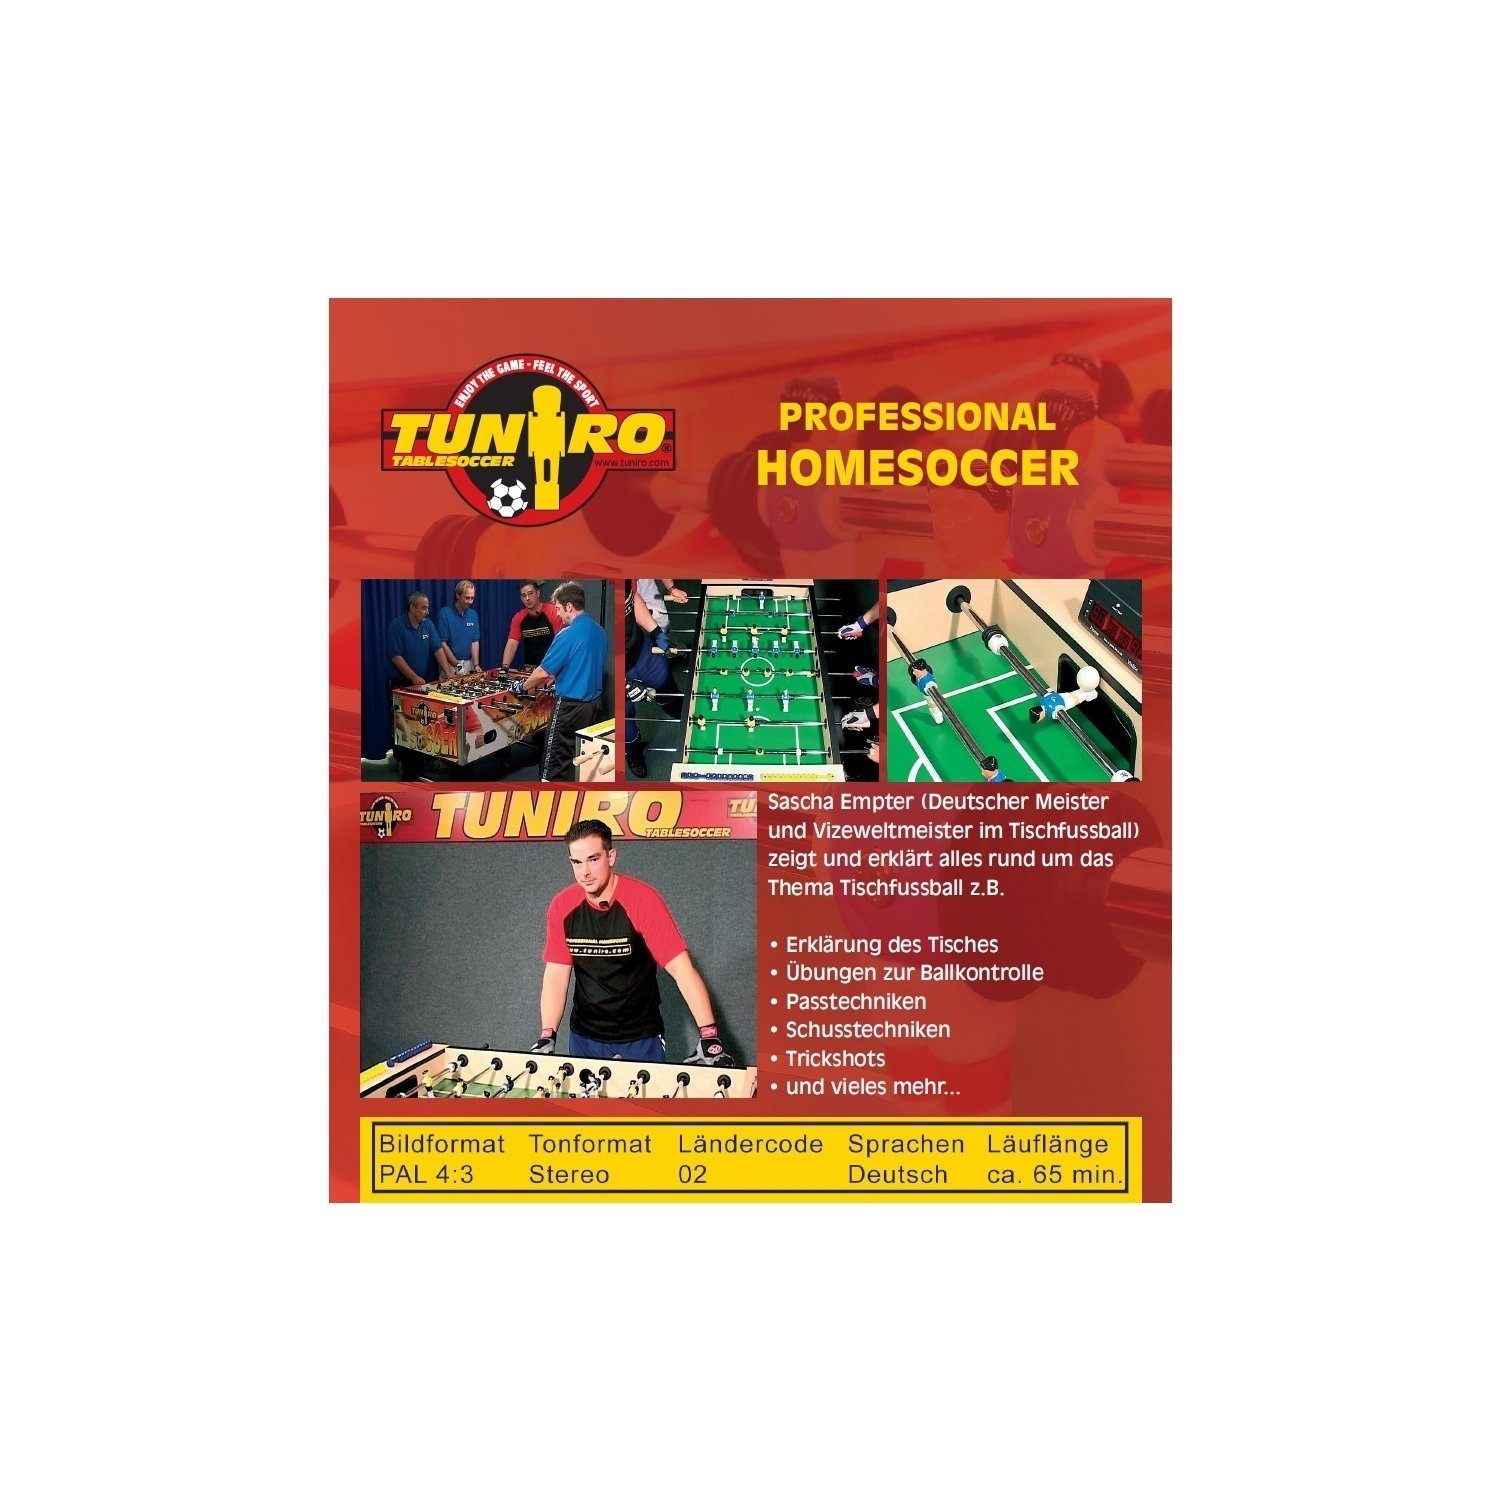 Homesoccer Training TUNIRO Kickertisch Tischkickerzubehör Lern-DVD, Kickertisch Professional Kicker Tischkicker, TUNIRO® Tischfussball,